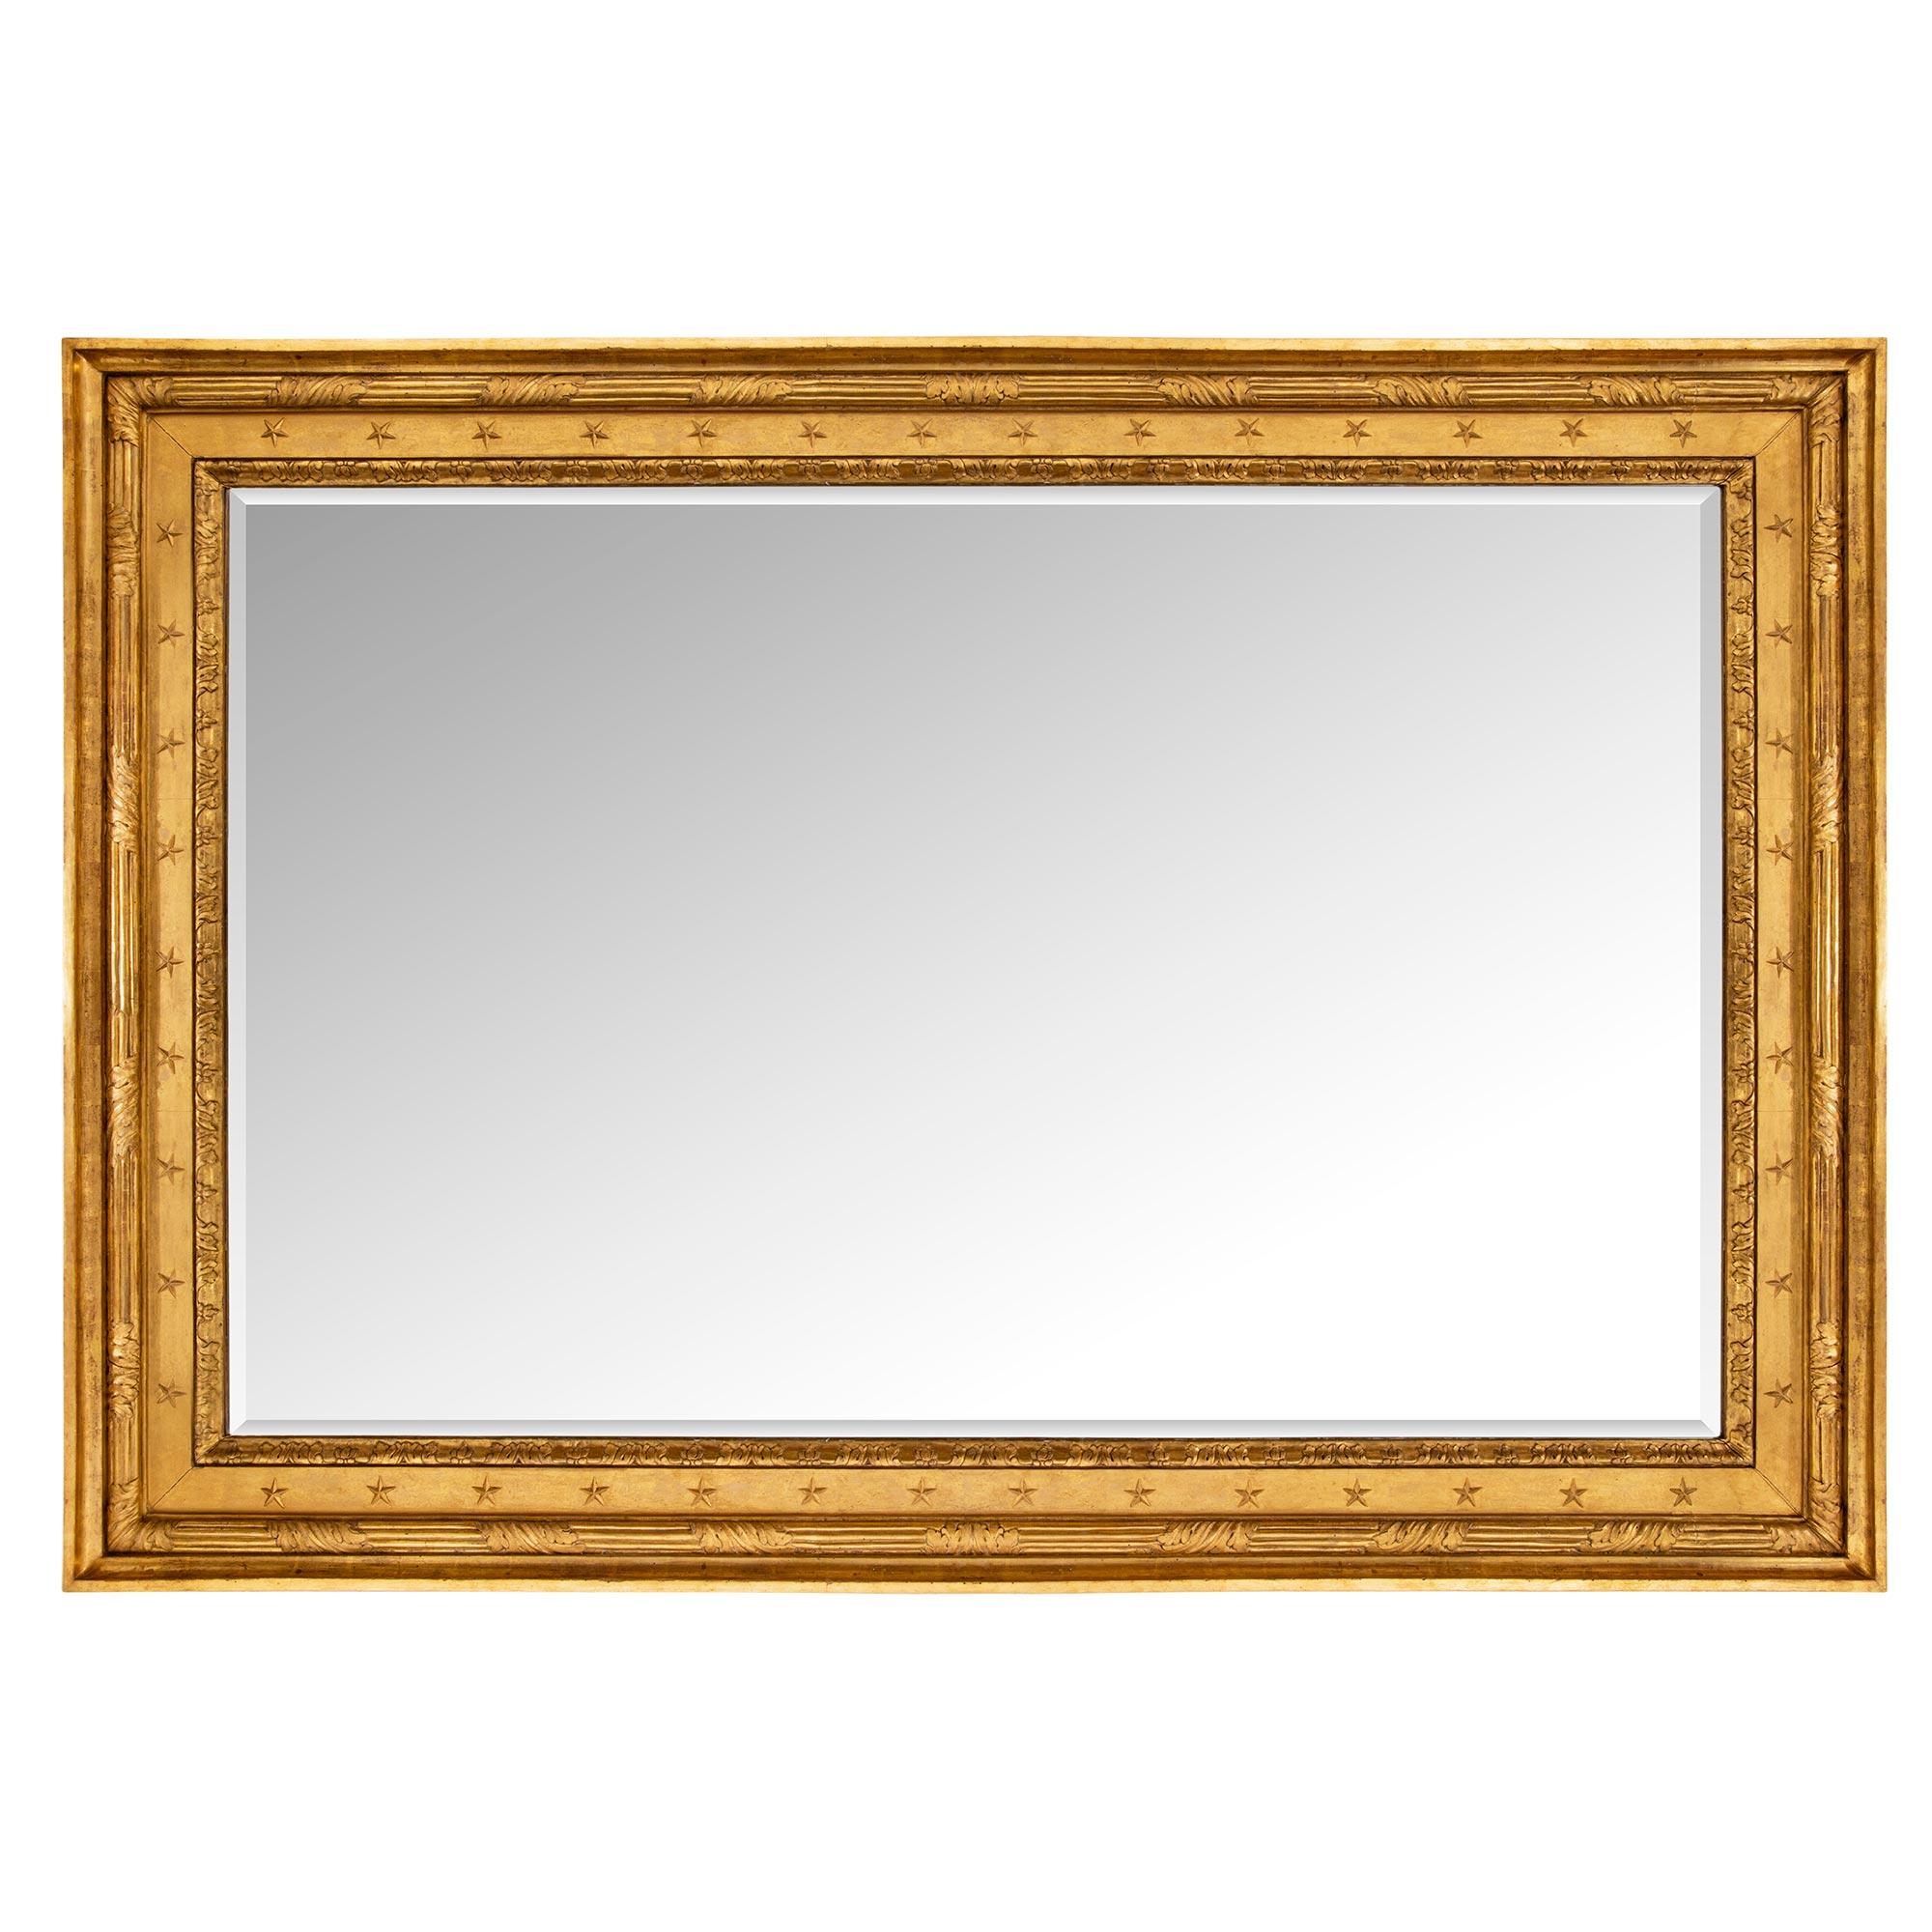 Miroir en bois doré Empire néo-classique italien du début du 19e siècle